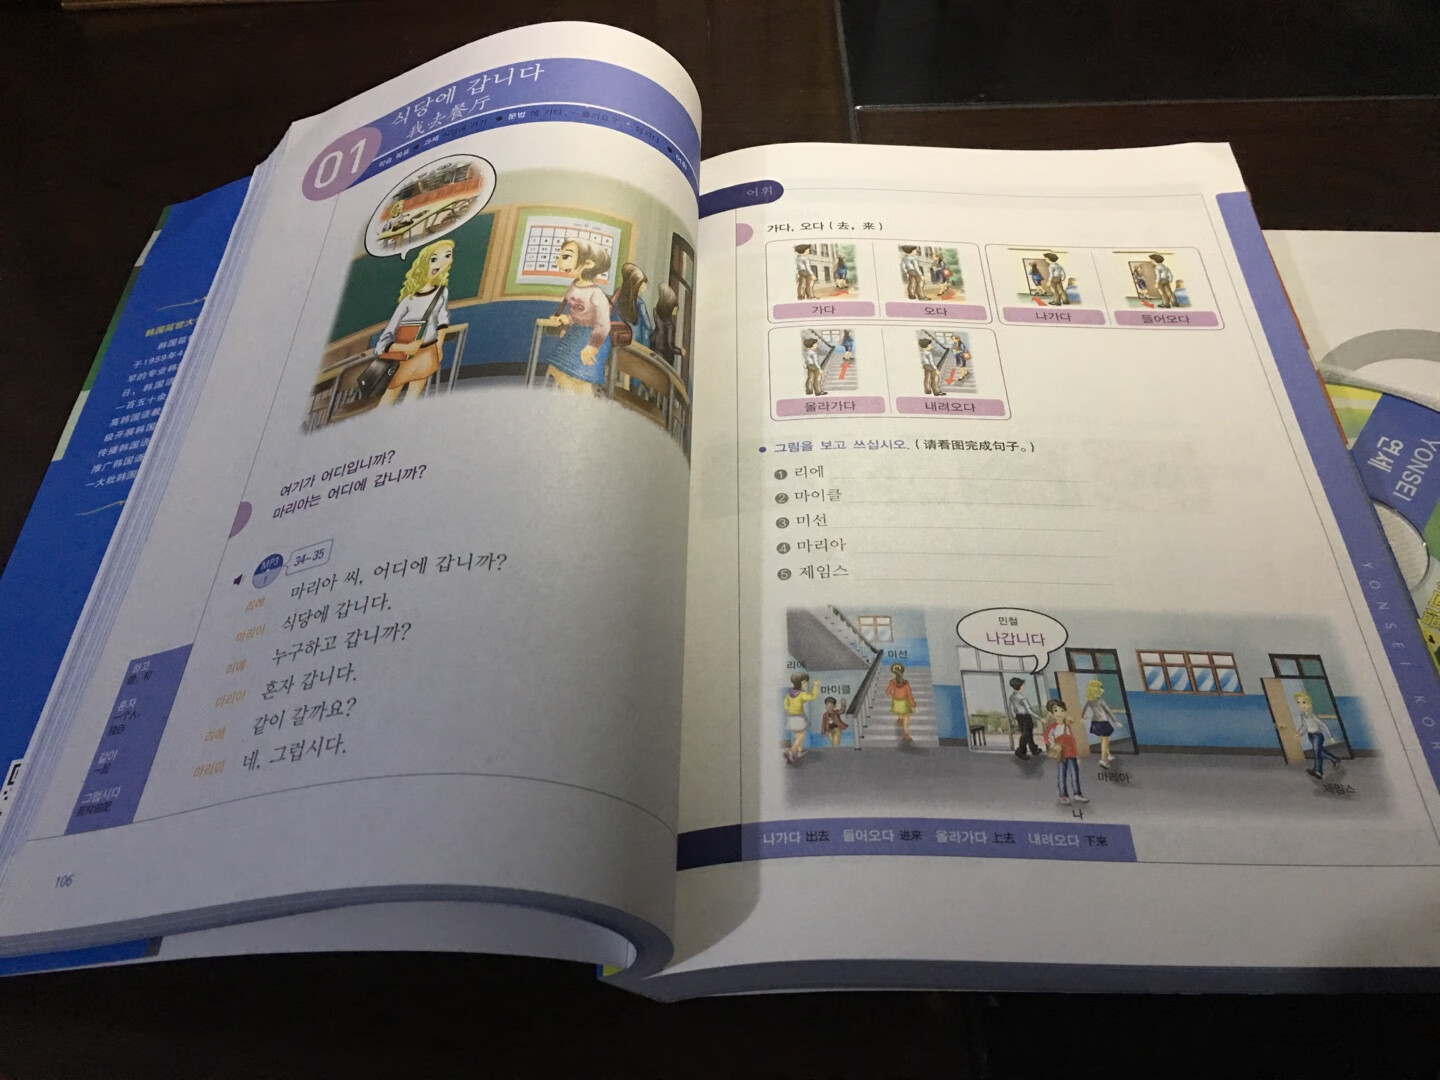 厚厚的一本，全彩印，有mp3光盘，想学习韩语的朋友可以购买。